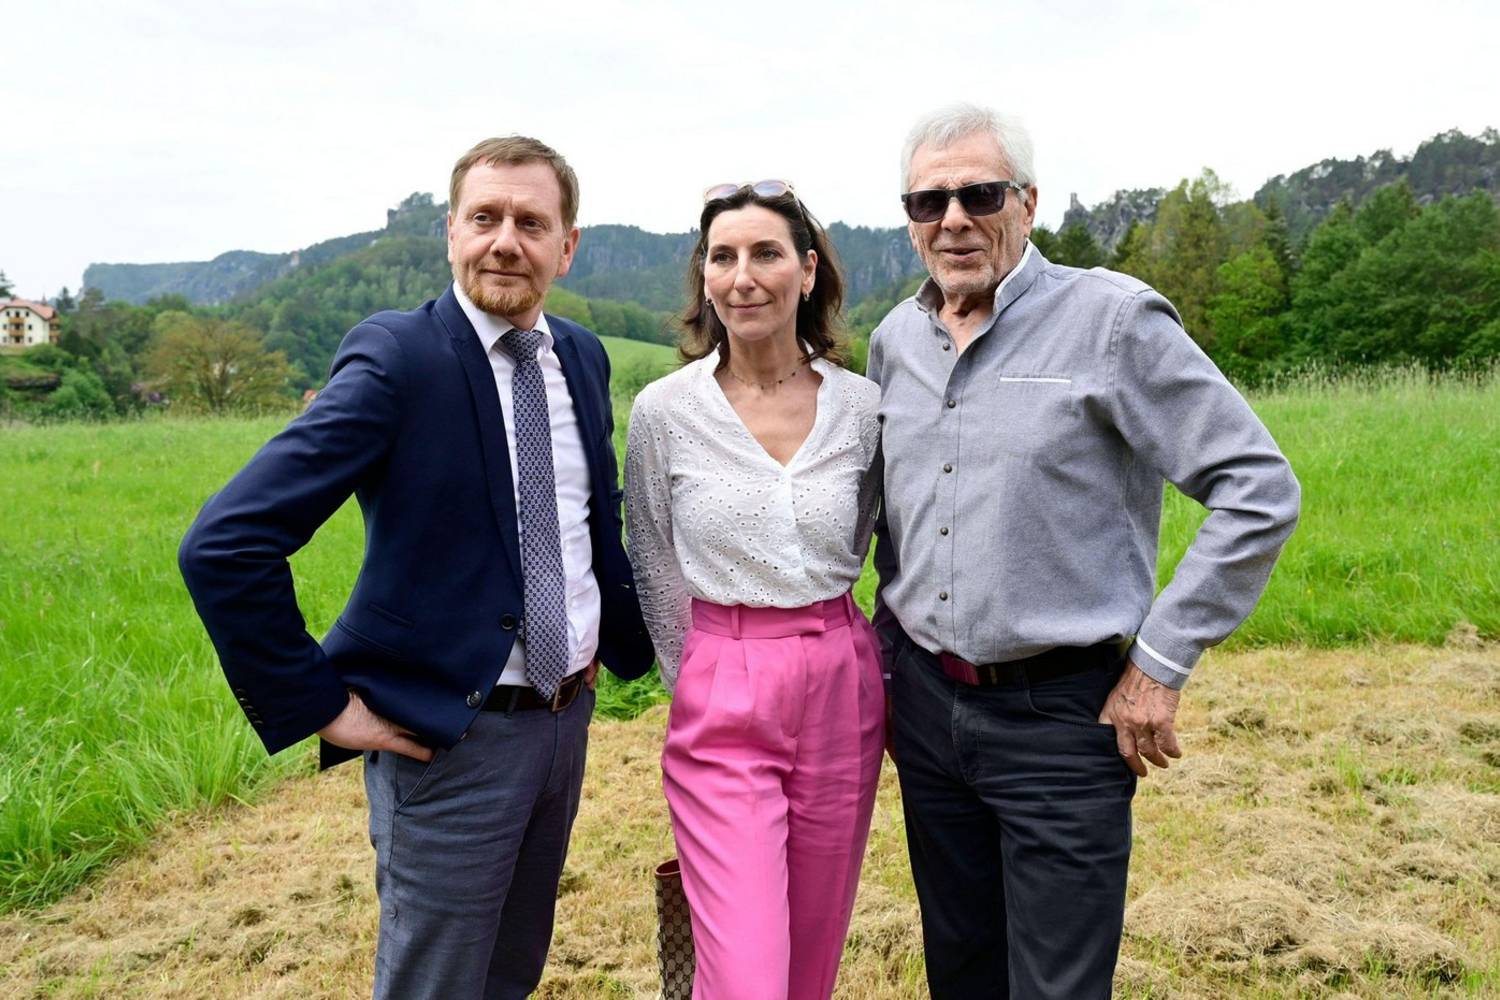 Gojko Mitic itt a párjával és Michael Kretschmerrel, Szászország miniszterelnökével pózolt együtt.